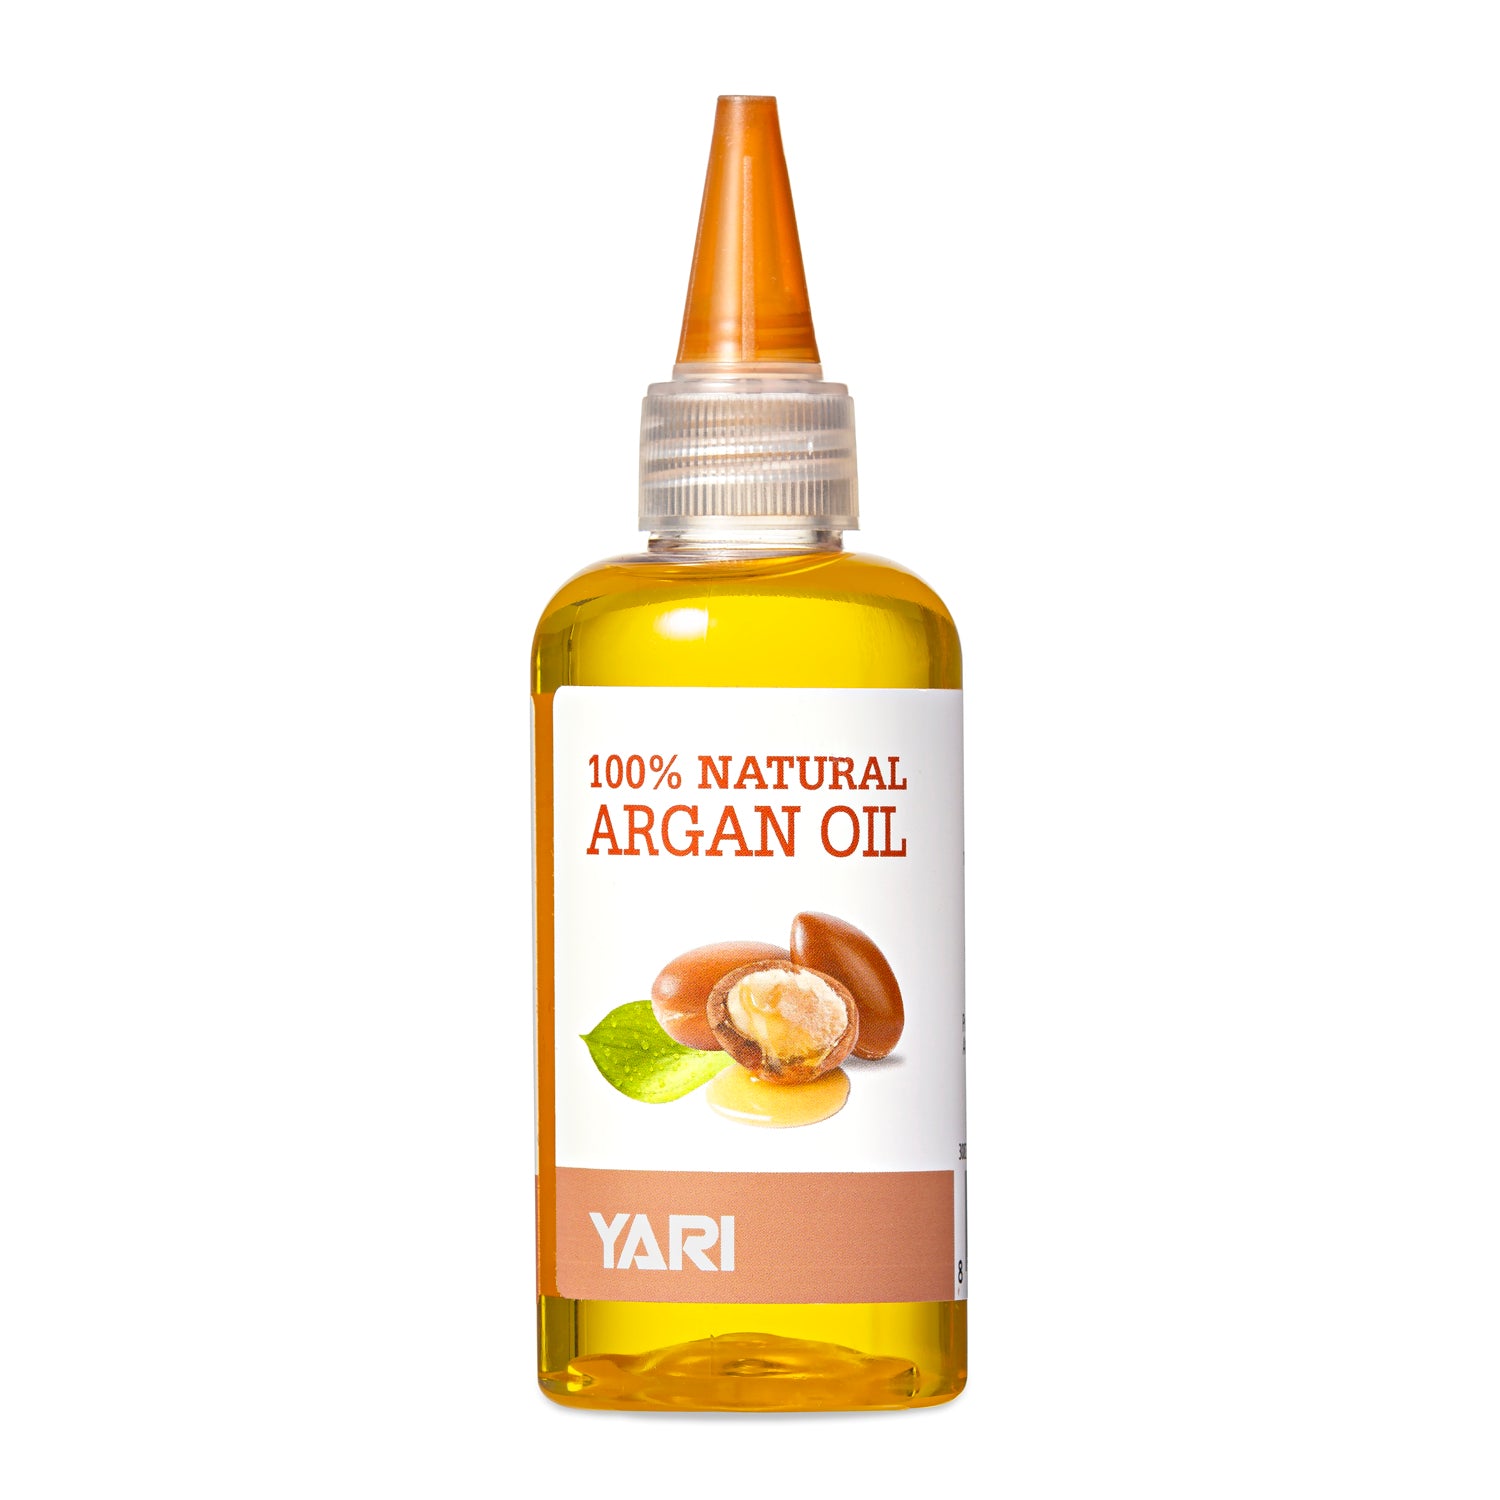 Yari - 100% Natural Argan Oil 110ml